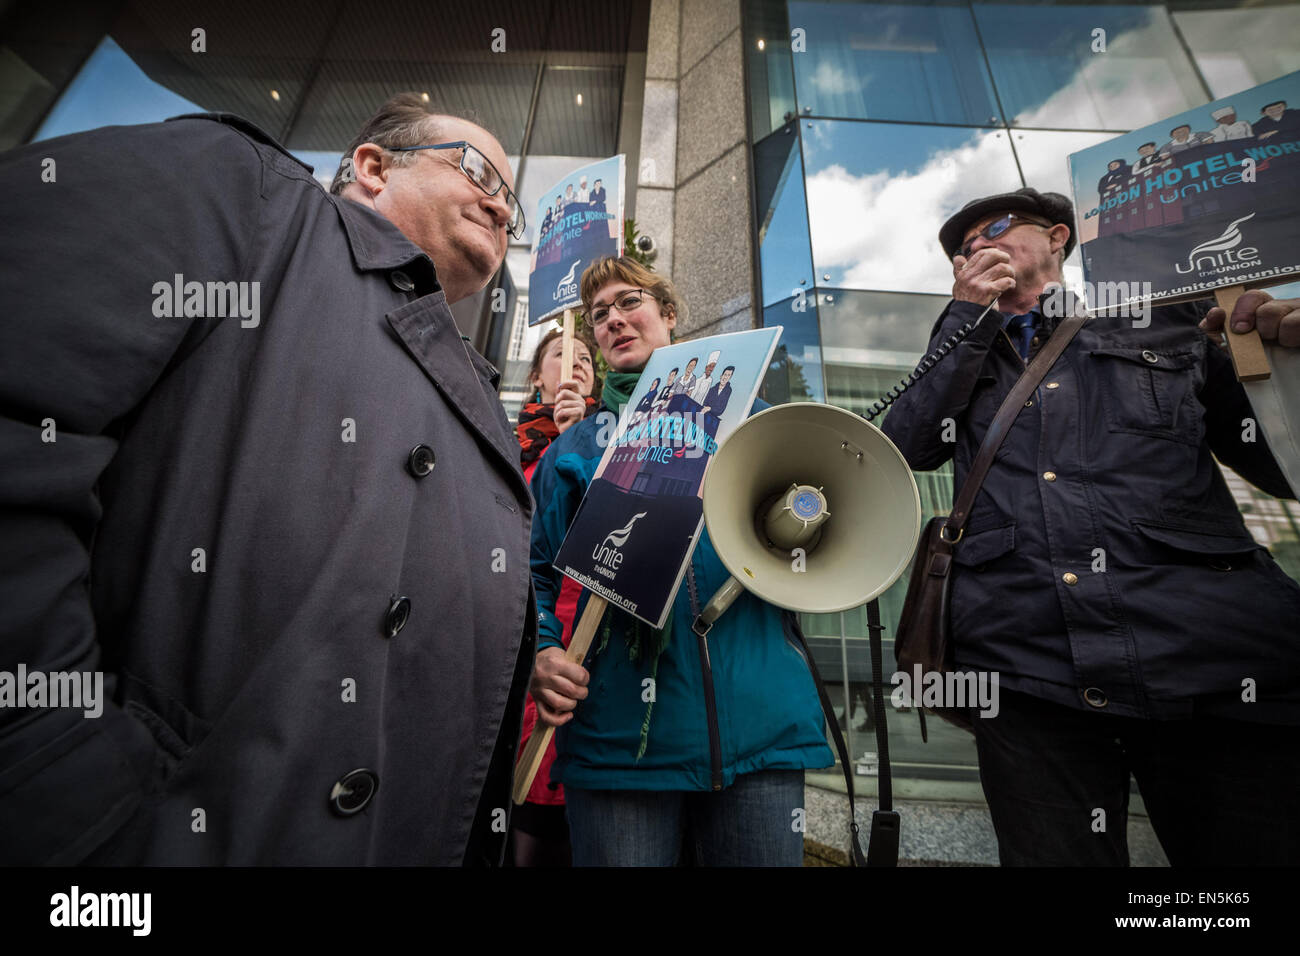 Londres, Royaume-Uni. 28 avril, 2015. Protestation des travailleurs à l'extérieur de l'hôtel Hilton Metropole Hotel Crédit : Guy Josse/Alamy Live News Banque D'Images